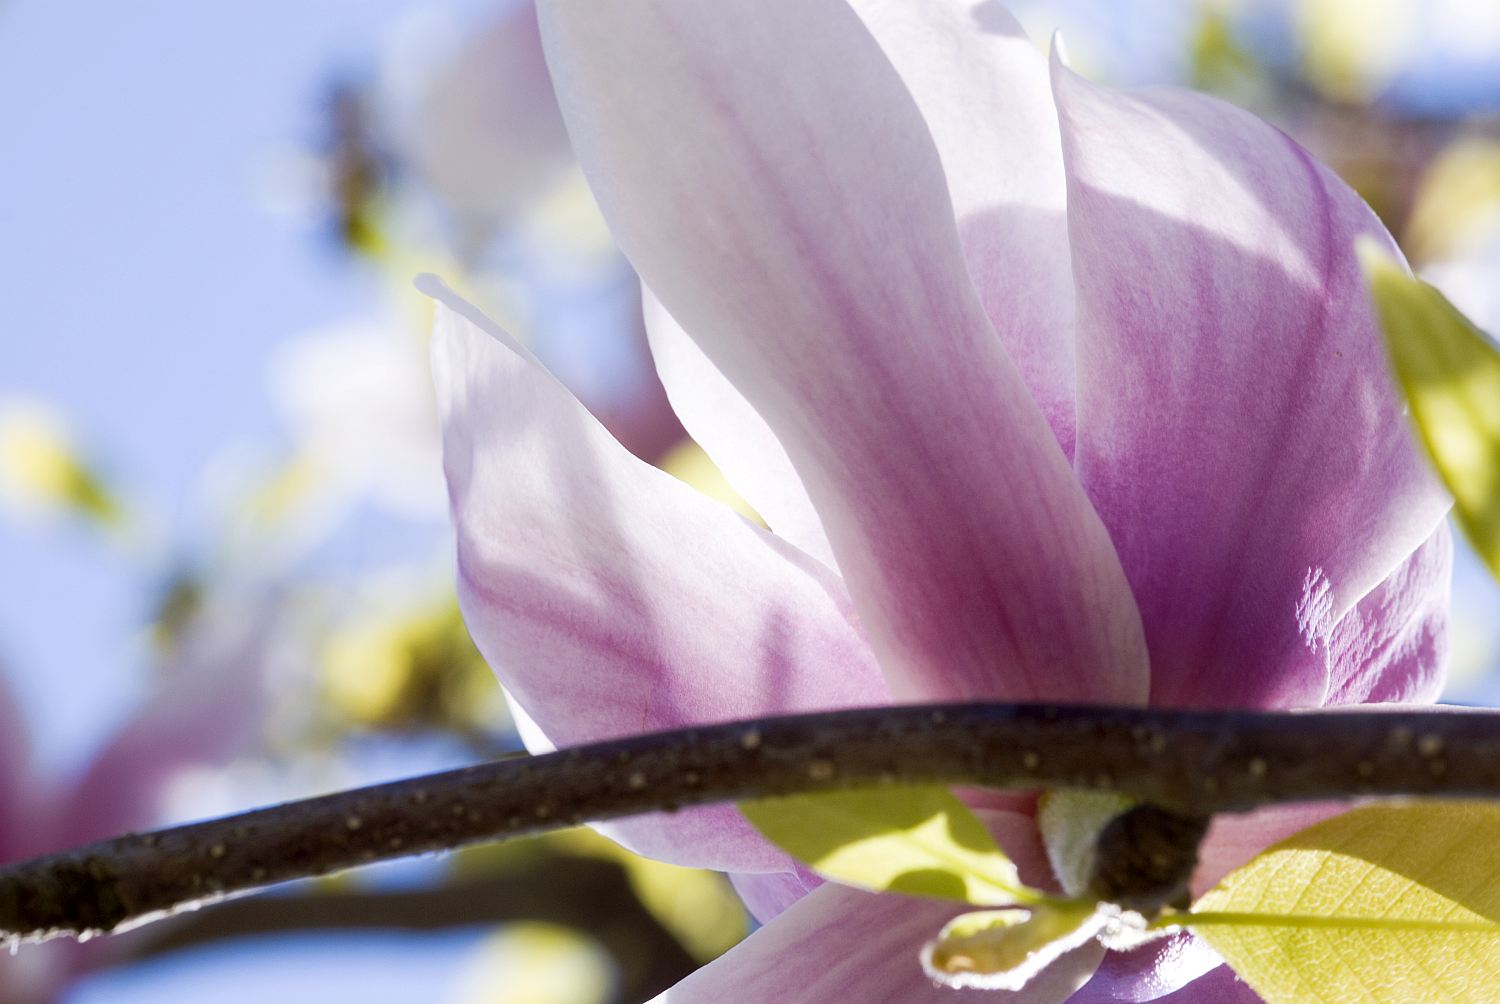 Sinn-Bild #27 Magnolienblüte: Eine Magnolienblüte vor blauem Himmel. (Bild von Adventuria® – Soziales Netzwerk & Journaling-Community, einer Plattform für digitale Tagebücher, Digidiarys, Freundschaft und psychologische Hilfe durch Podcasts)